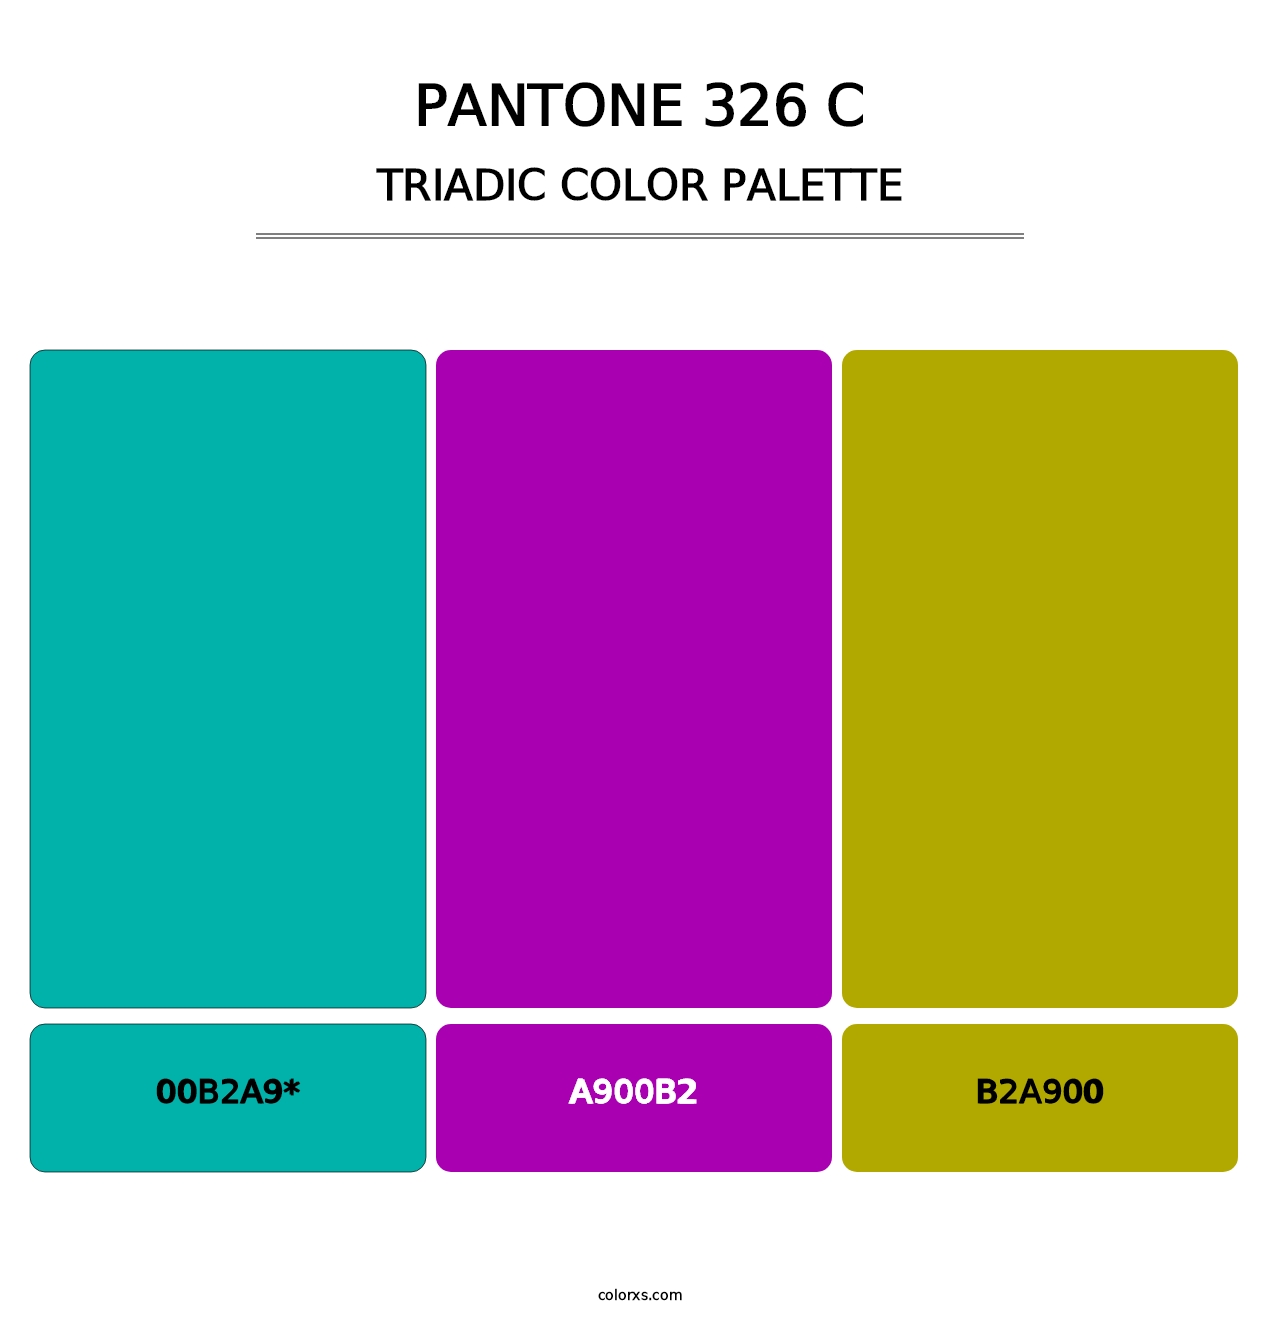 PANTONE 326 C - Triadic Color Palette